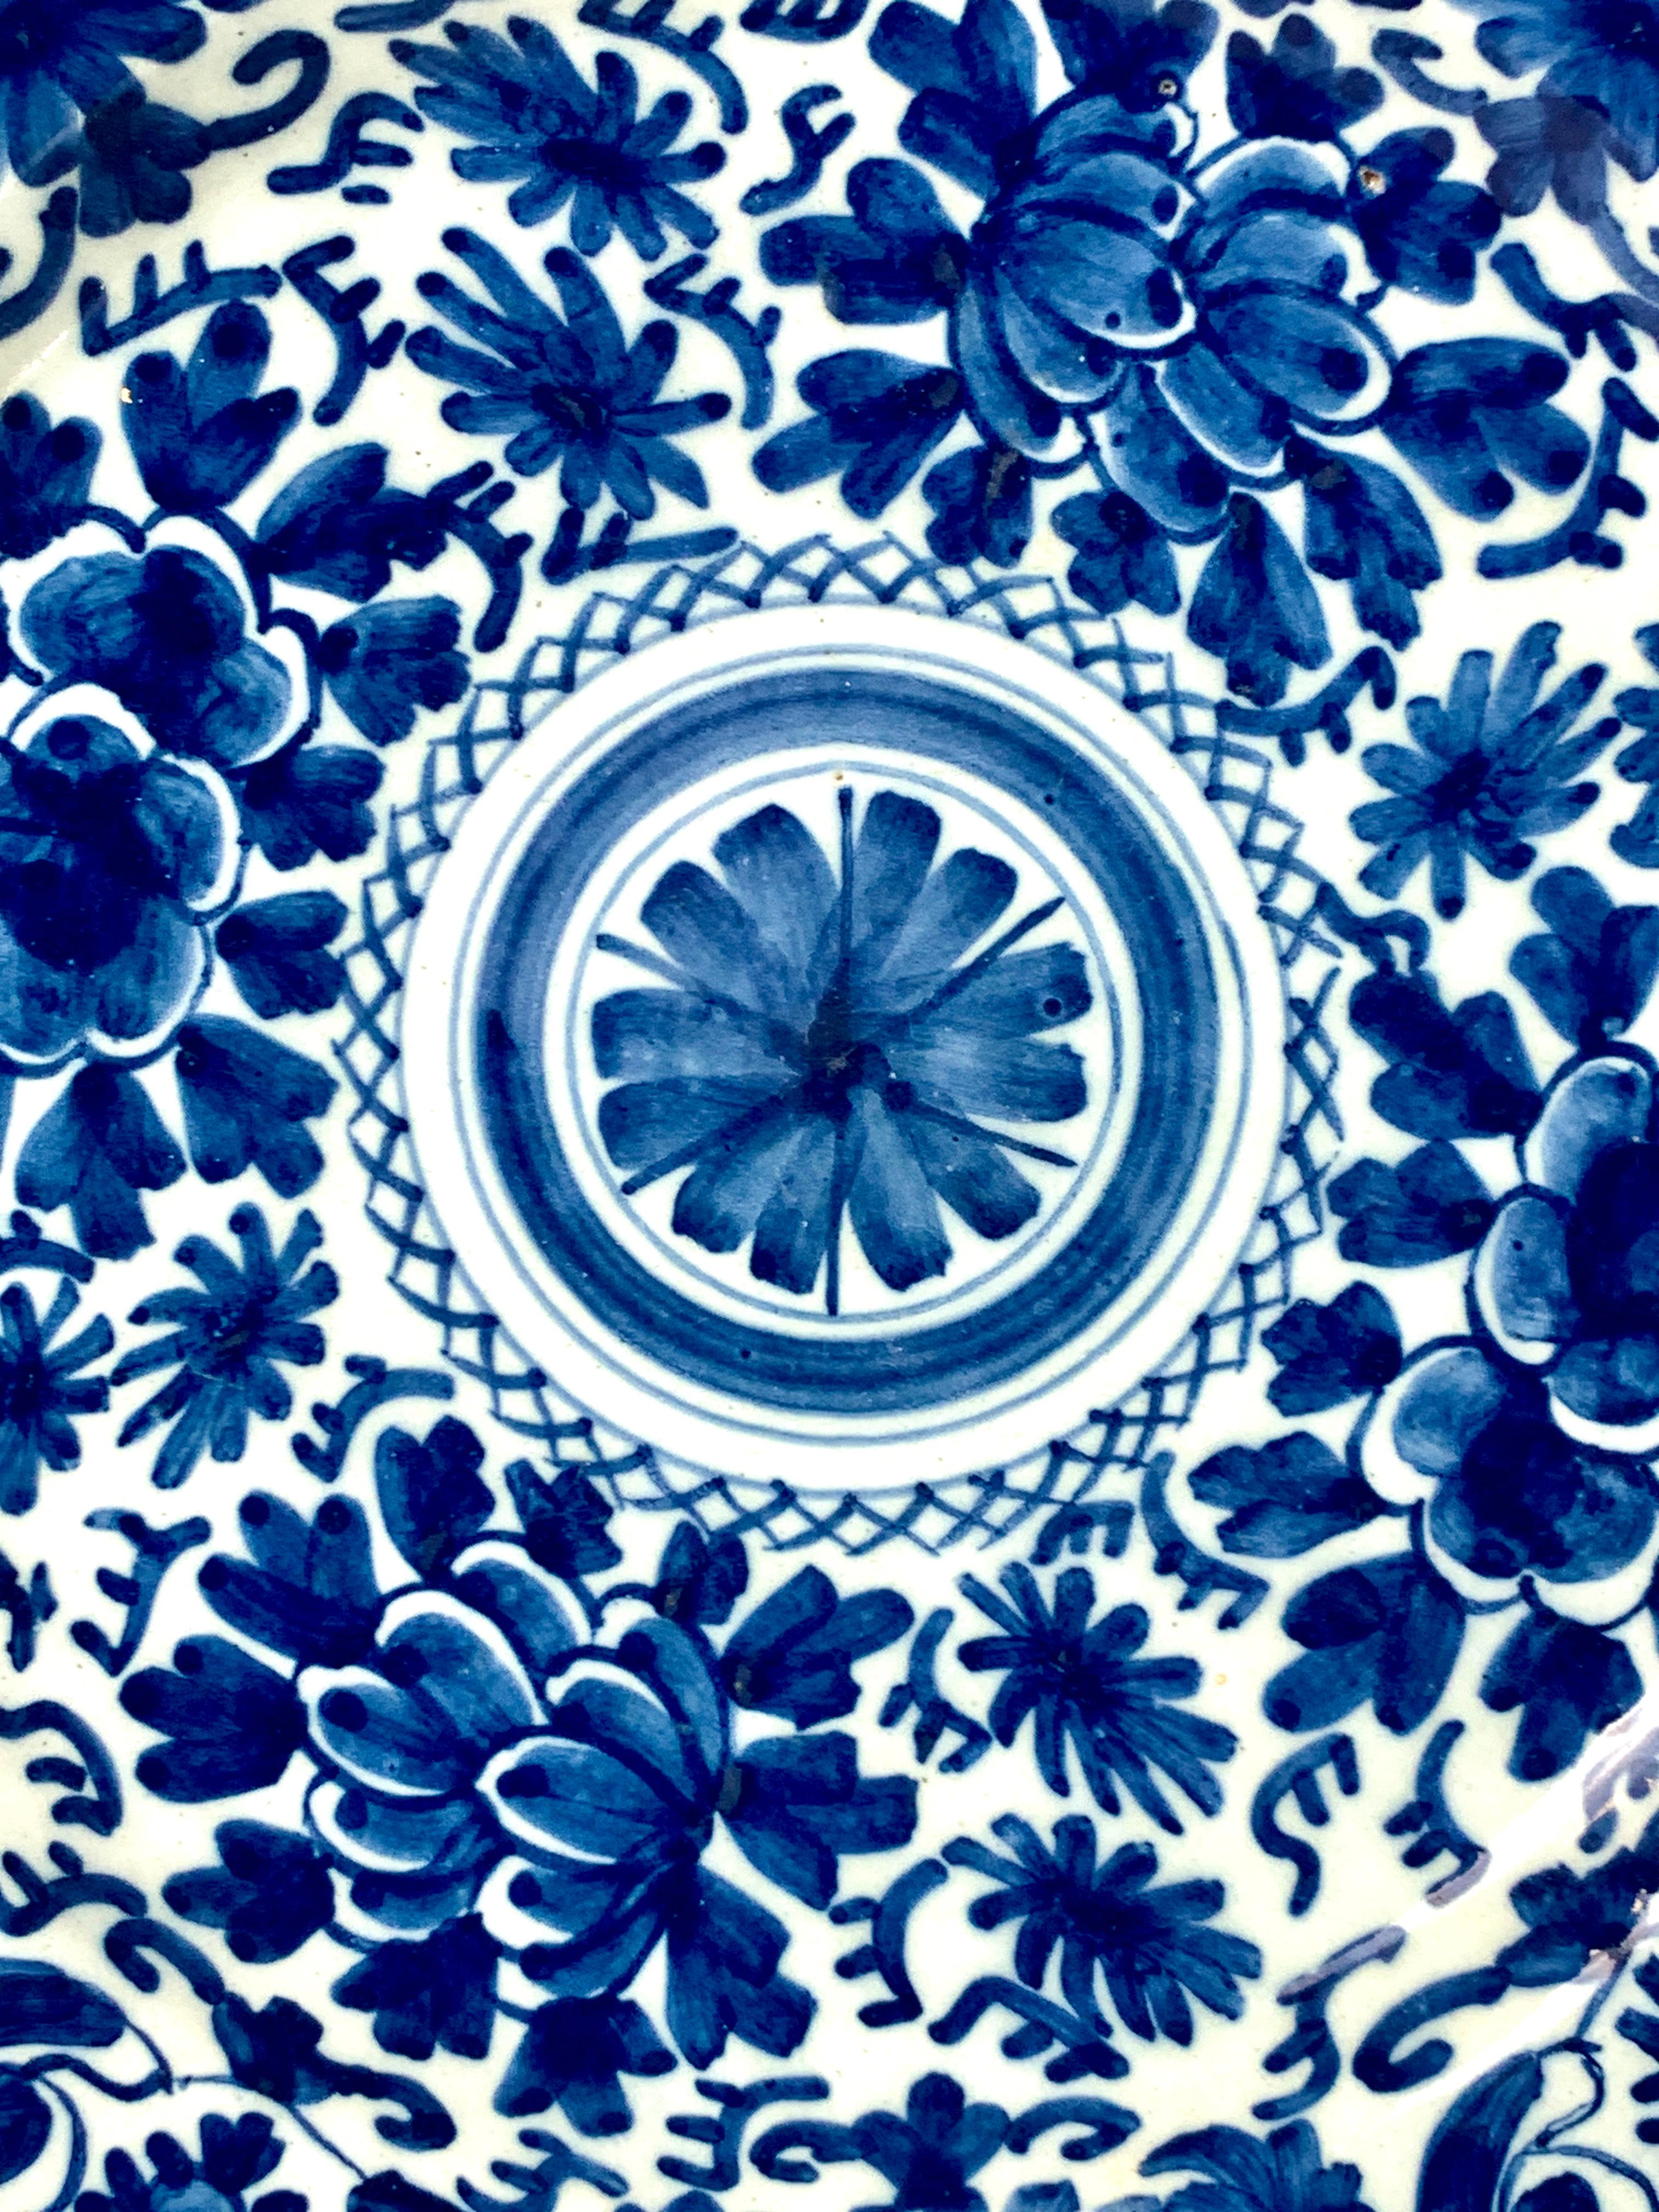 Dieses blau-weiße Delft-Geschirr wurde im 18. Jahrhundert um 1780 in den Niederlanden handbemalt.
Das Dekor zeigt ein traditionelles holländisches Delft-Muster mit Ranken und Tulpen um ein zentrales Medaillon.
Das Ladegerät ist in einem exquisiten